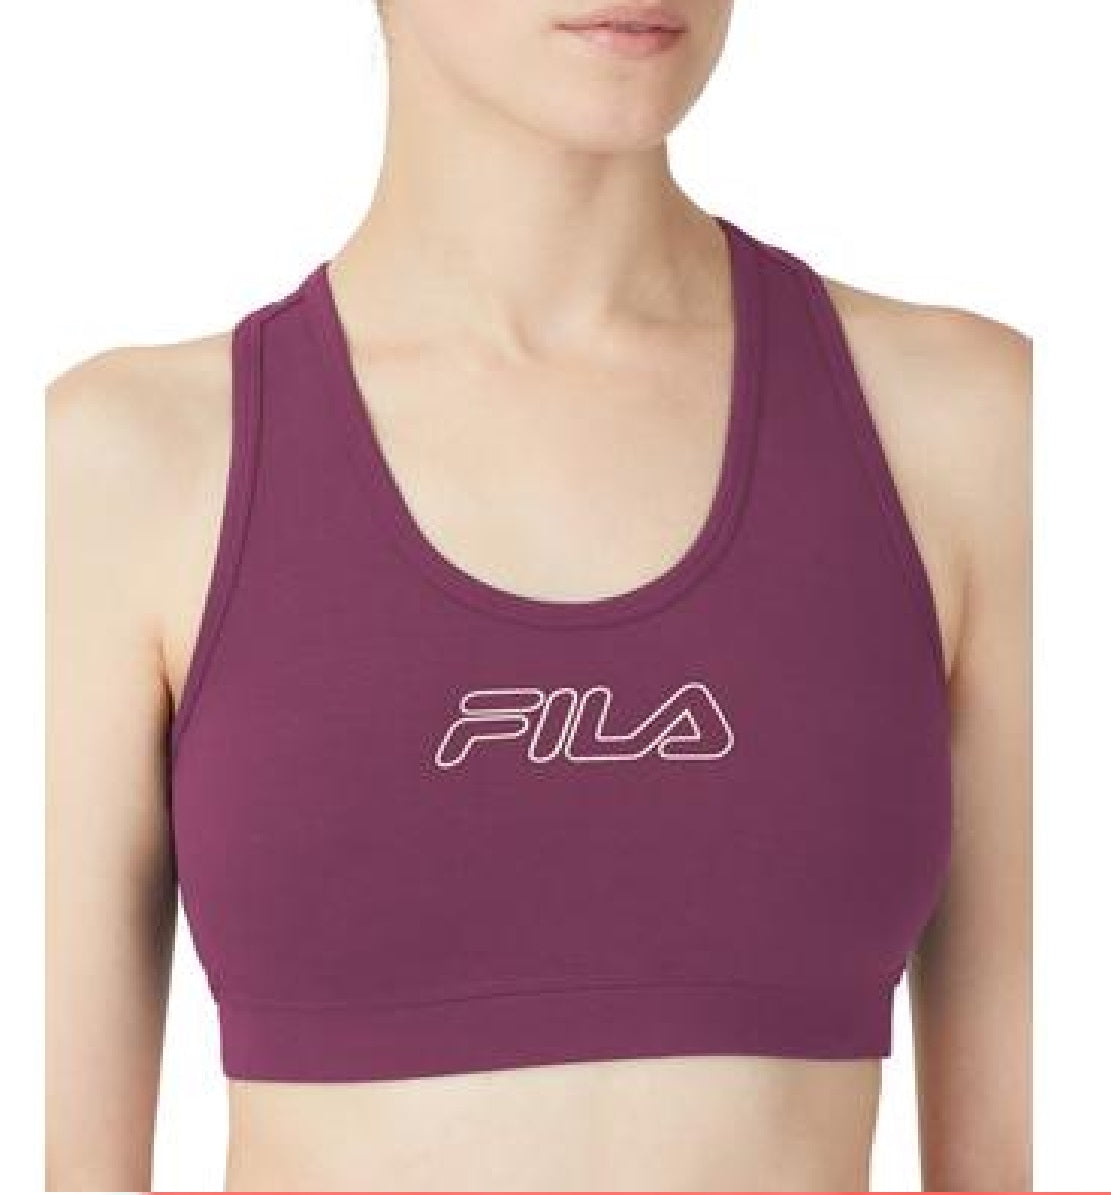 Fila Women's Bloom Logo Pullover Jersey Sports Bra Purple Size 1X